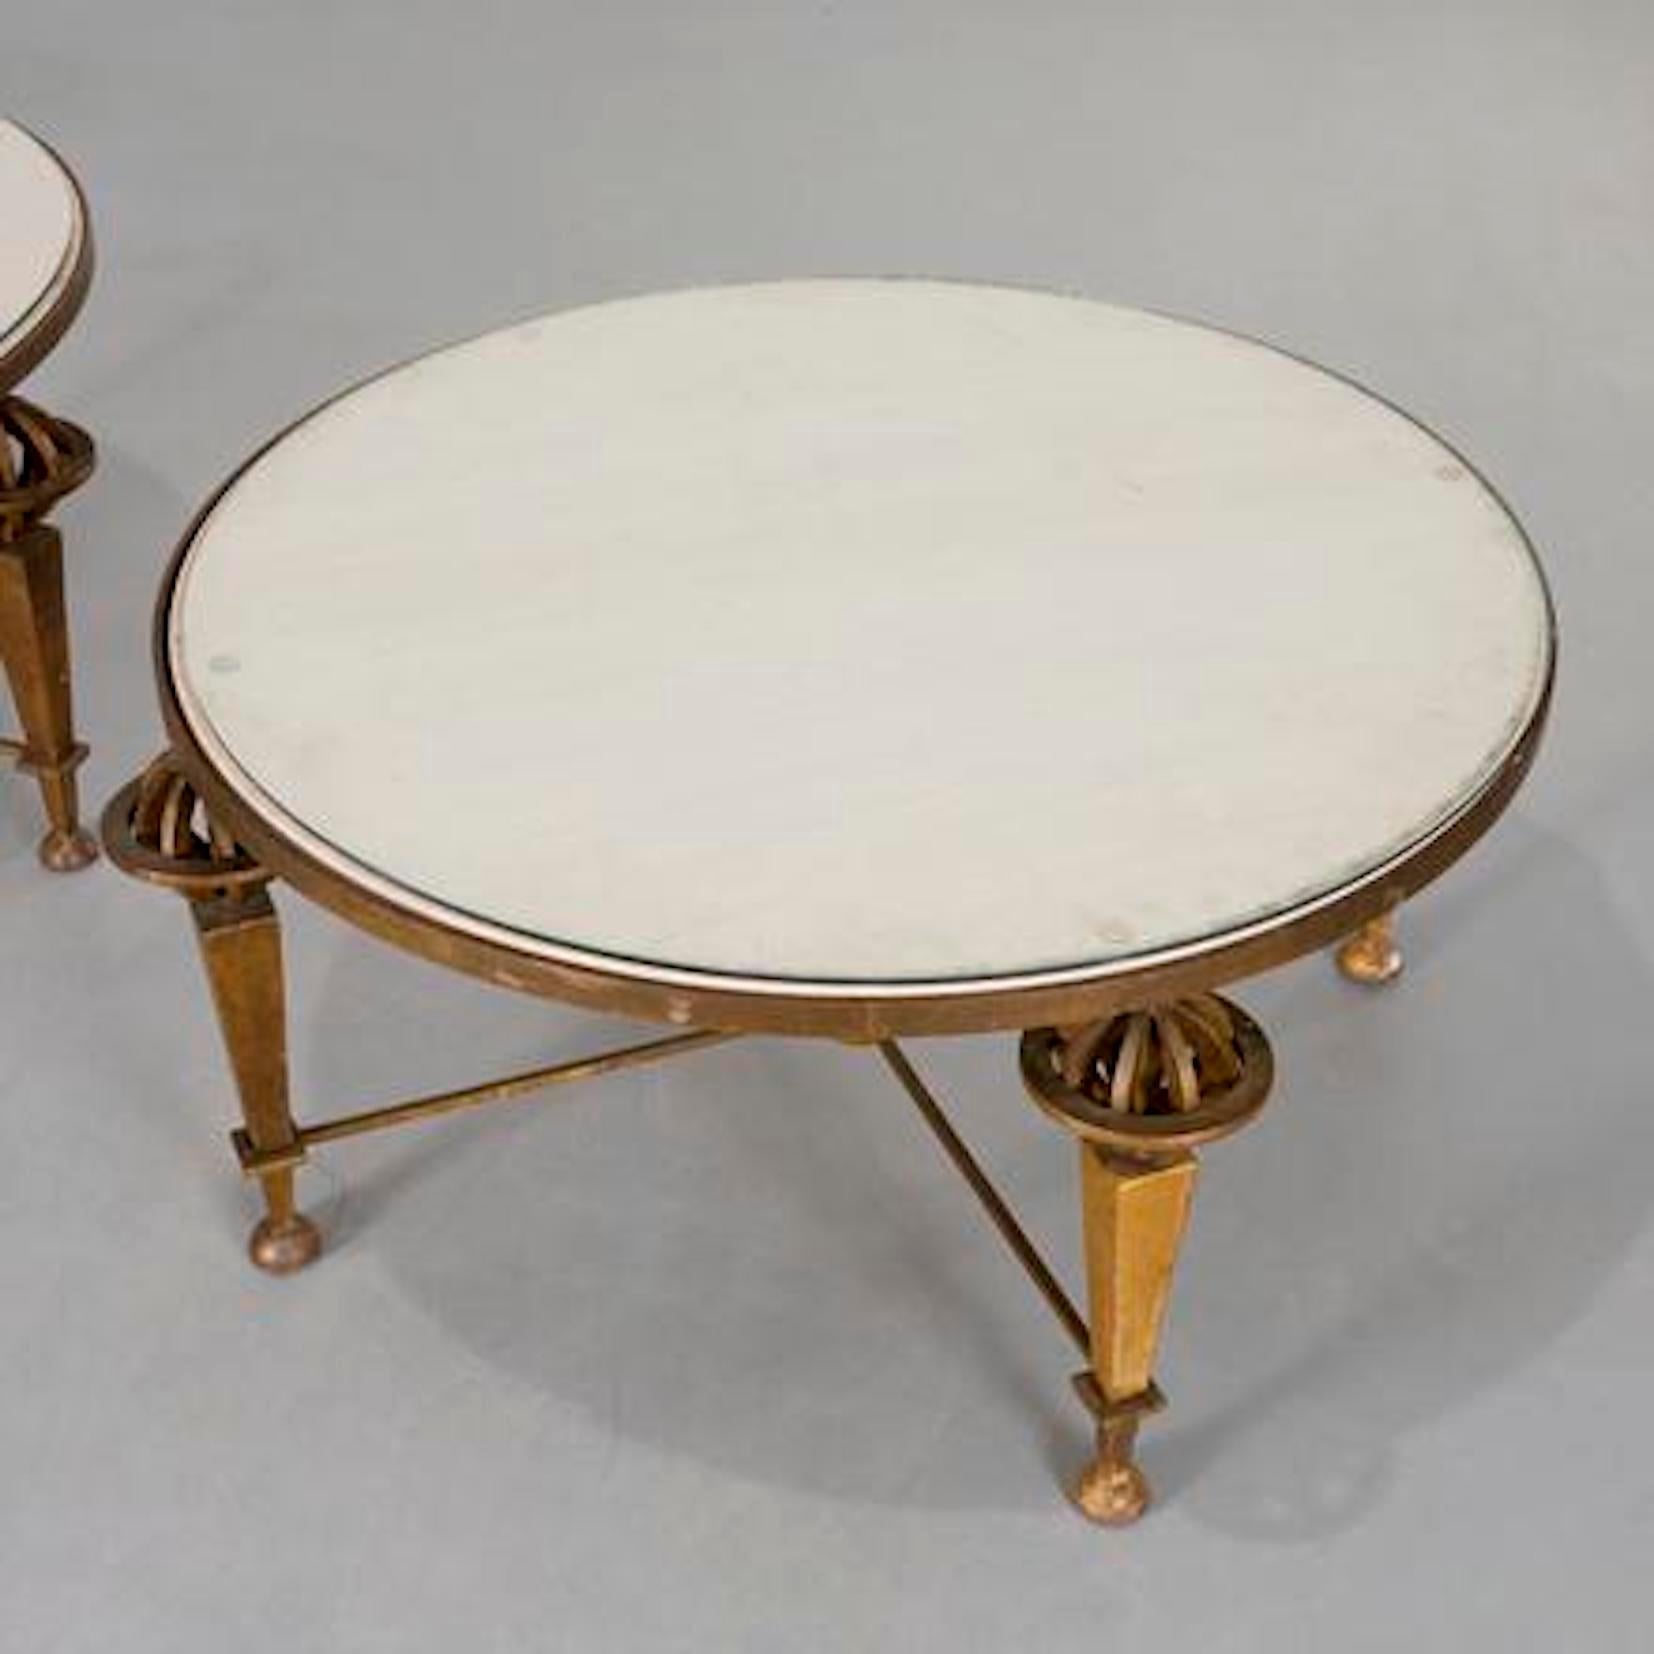 Paar runde vergoldete Eisen-Tische  Gilbert Poillerat zugeschrieben  die  Tischplatten eingelegt mit
Beilage  mit Glas, auf vier Armillargläsern über pyramidenförmigen Beinen stehend
durch eine Bahre, die sich in einer zentralen, auf Kugelfüßen